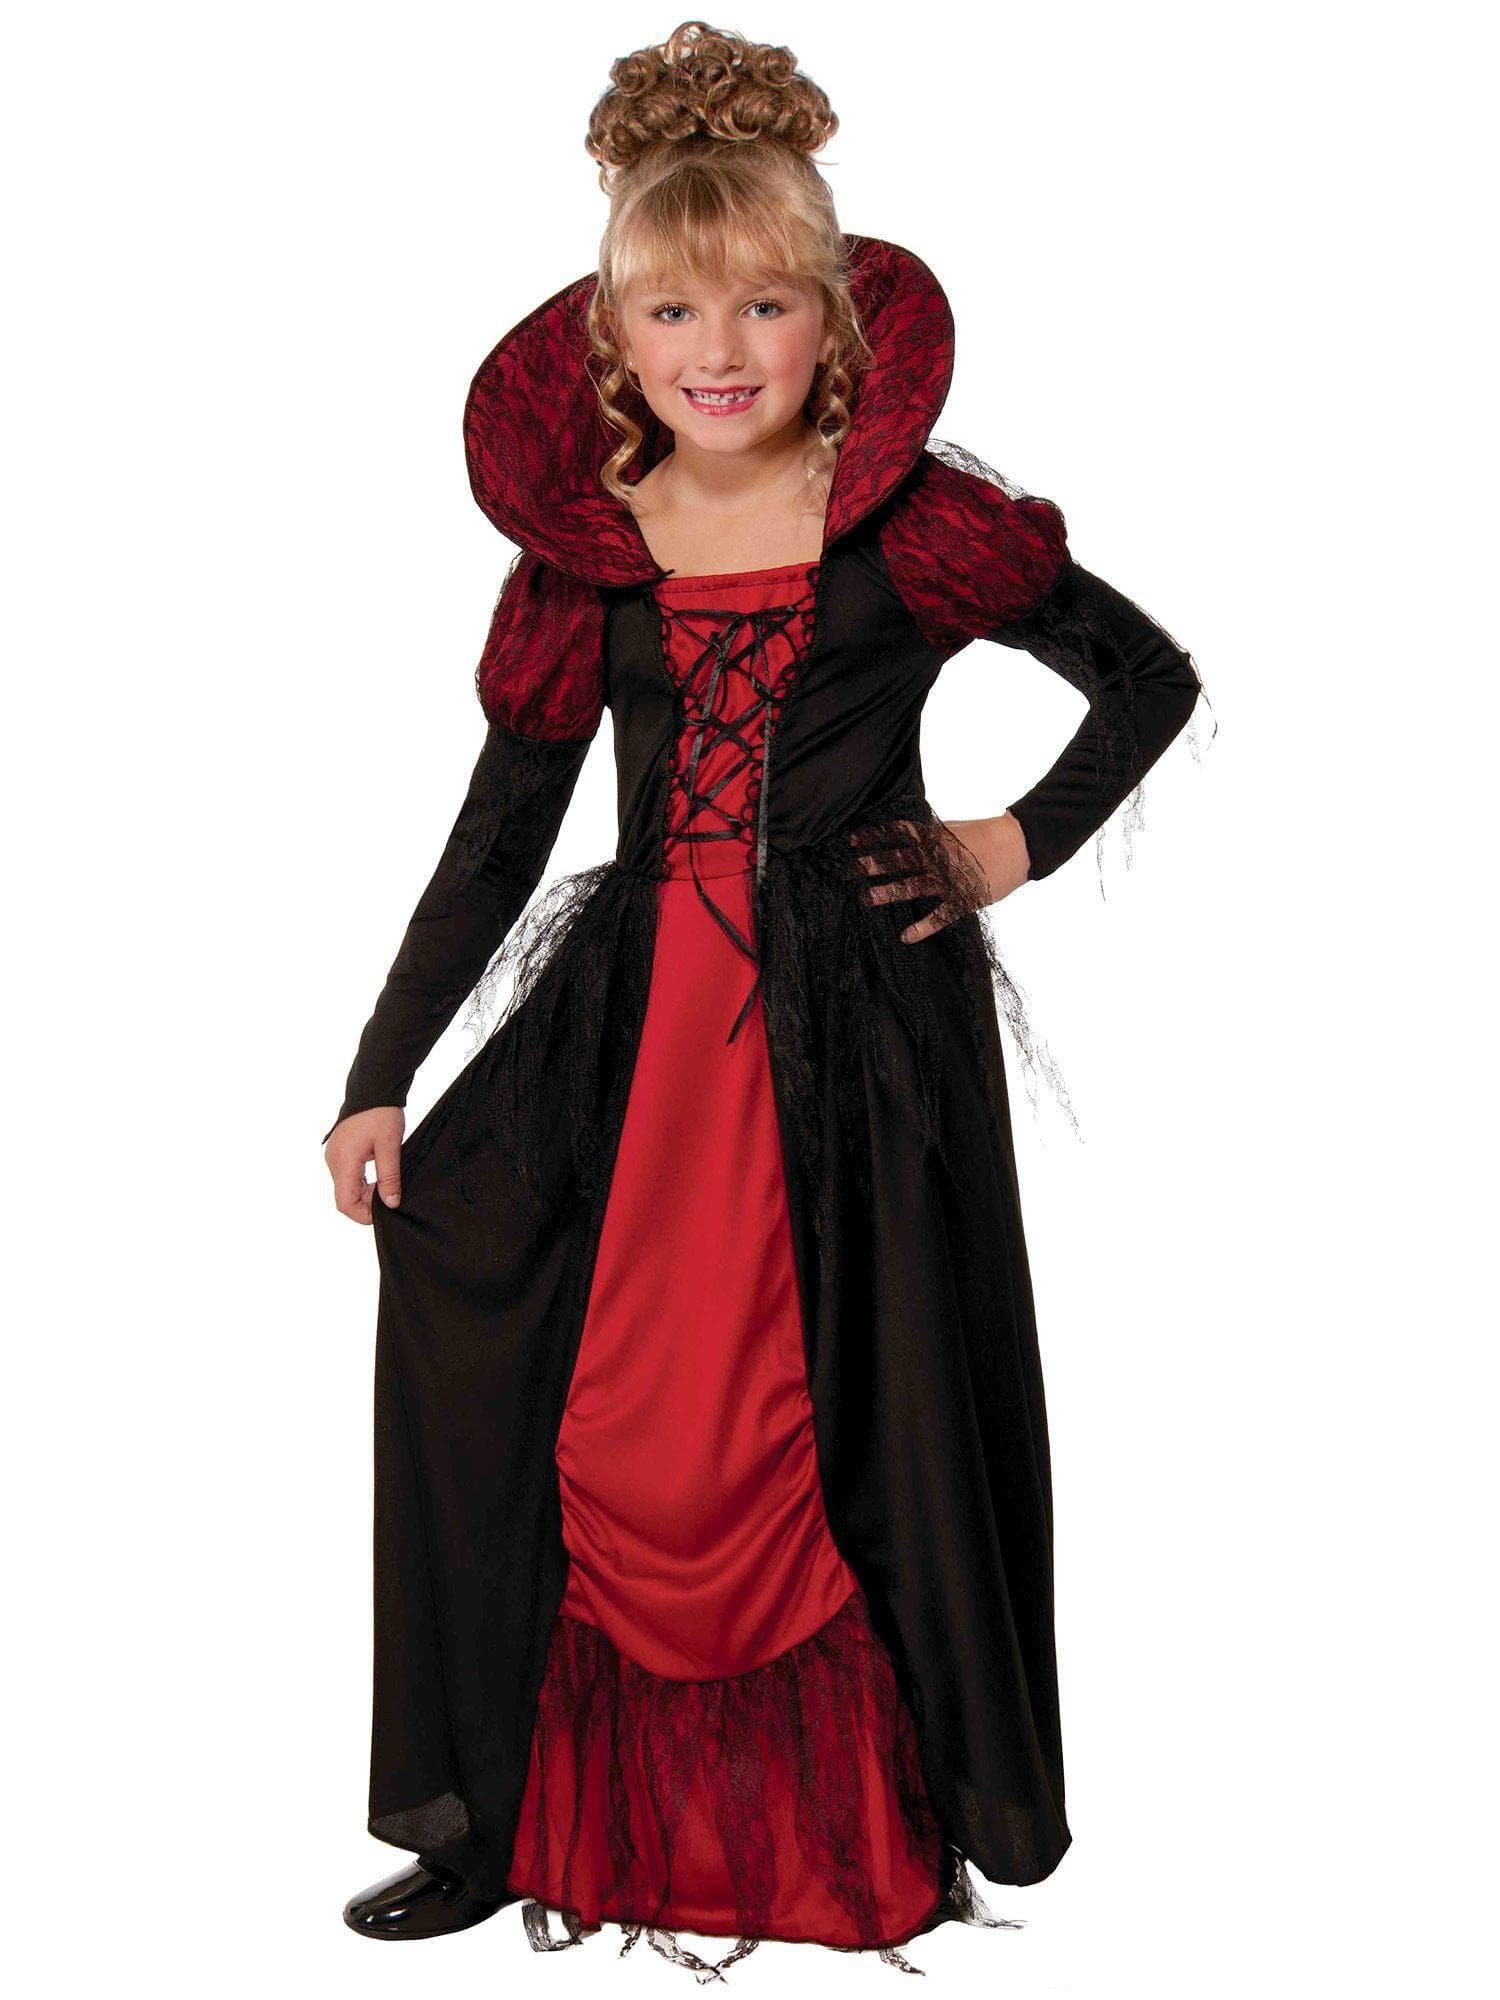 Kid's Vampiress Queen Costume - costumes.com